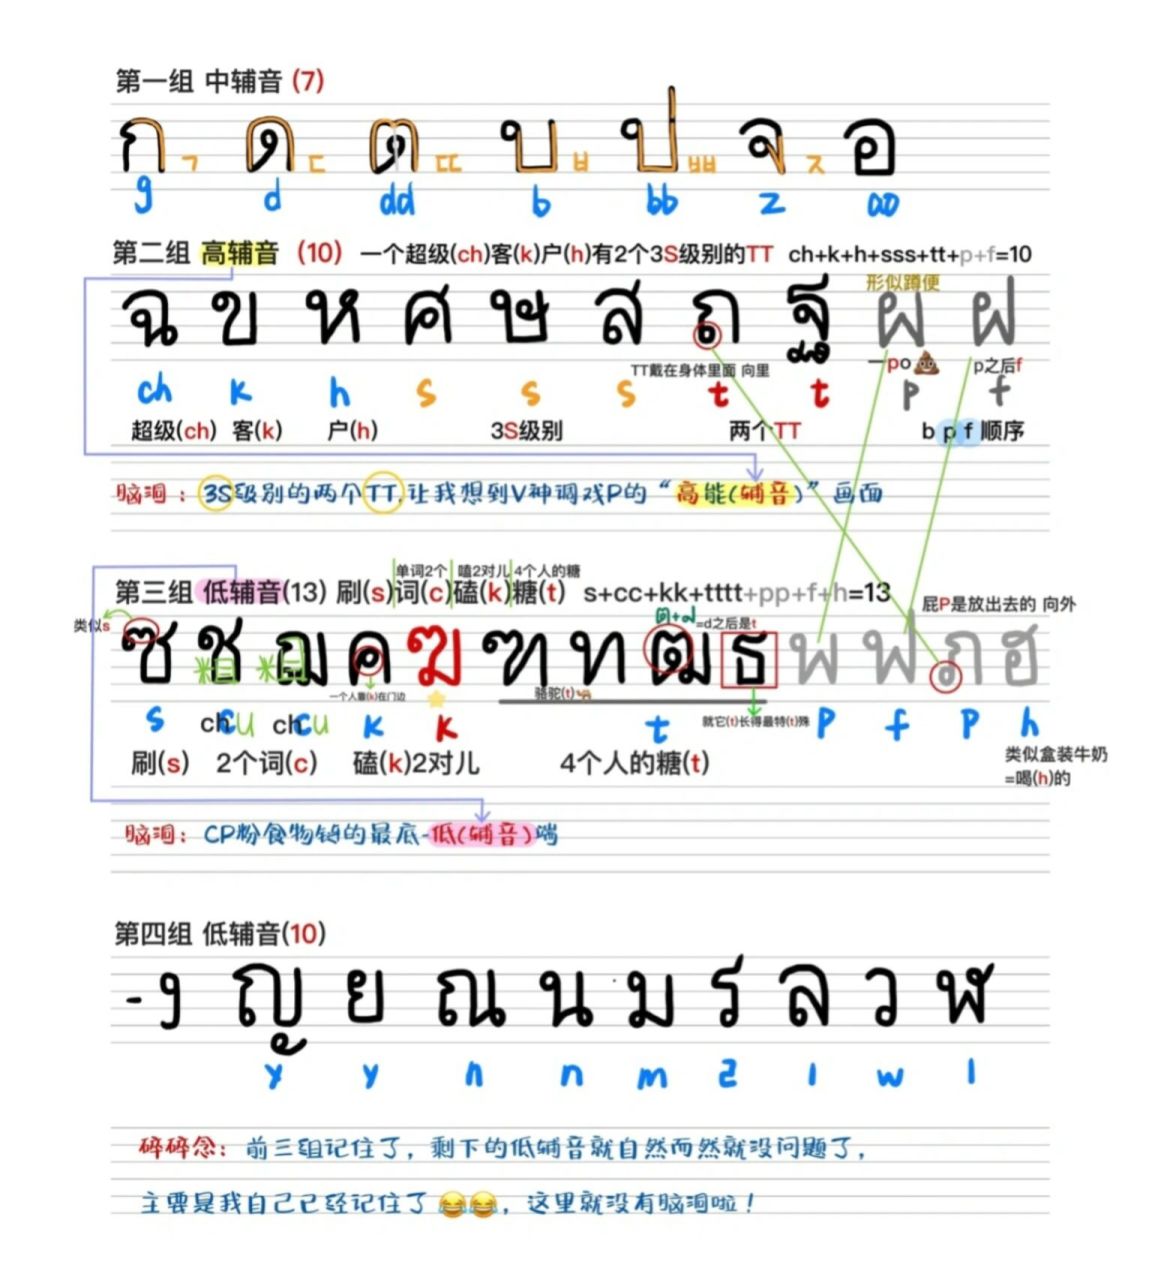 一张图让你记住泰语全部辅音字母 哈哈哈哈 乖～进我的主页